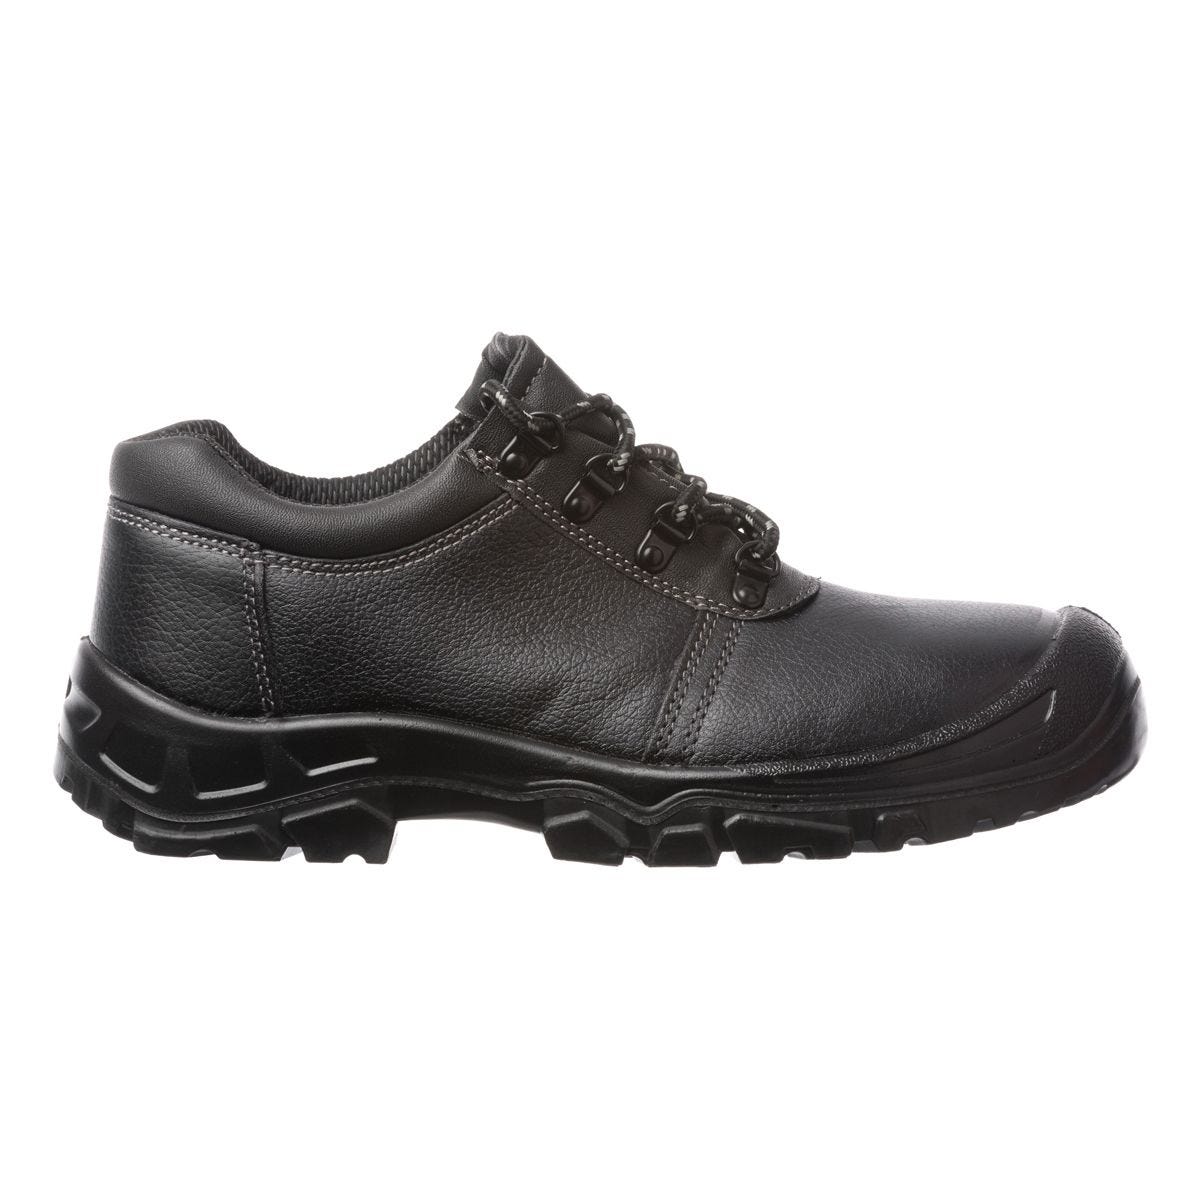 Chaussures de sécurité basses Azurite II S3 ESD noir - Coverguard - Taille 48 0